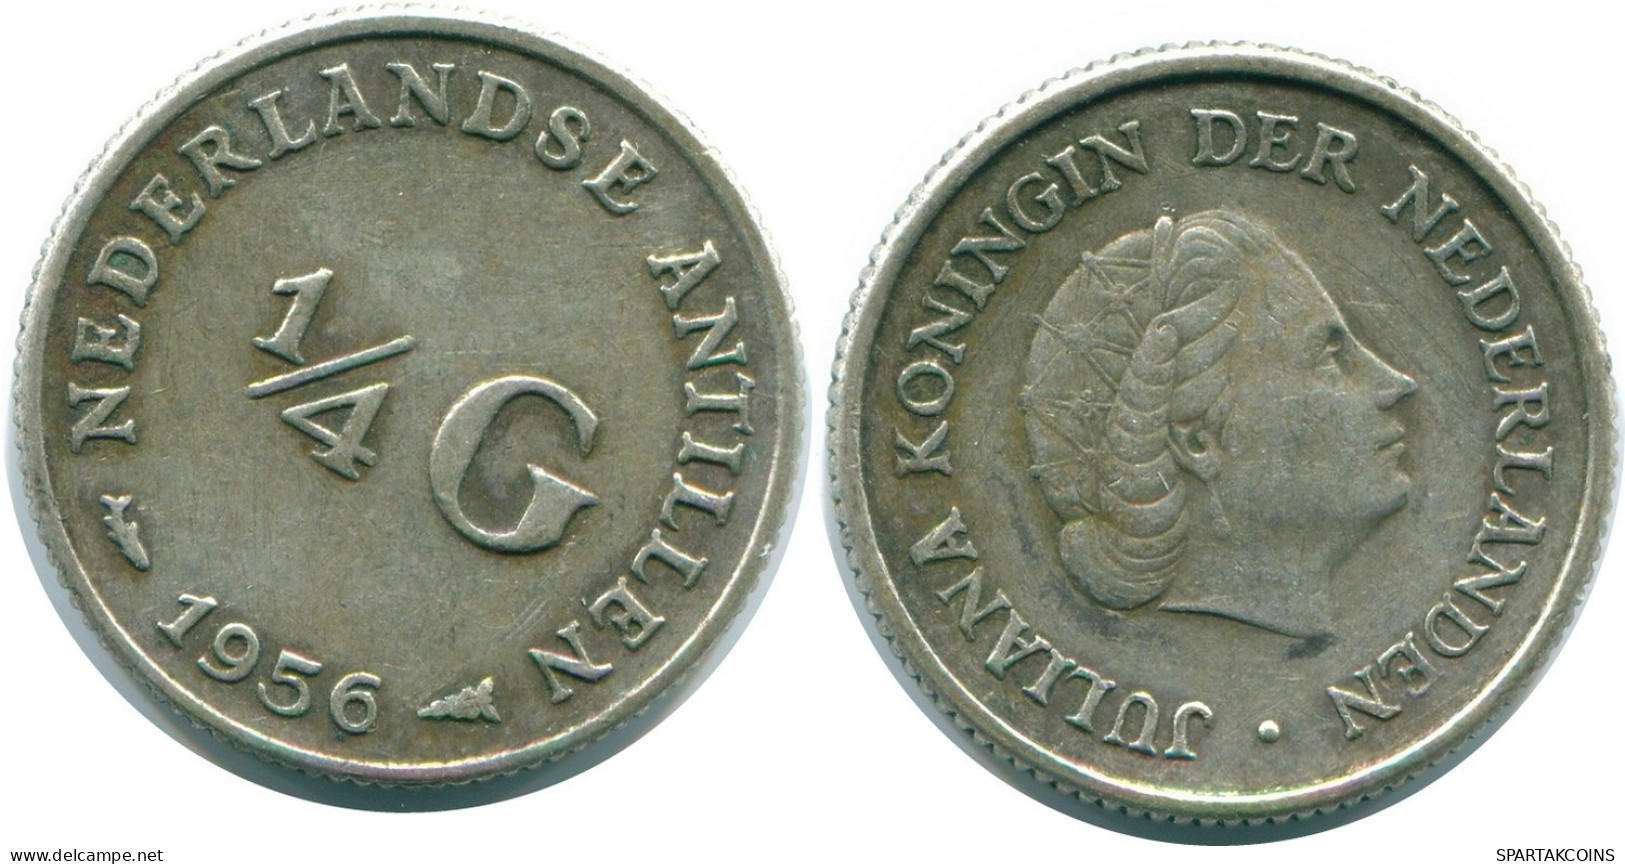 1/4 GULDEN 1956 NIEDERLÄNDISCHE ANTILLEN SILBER Koloniale Münze #NL10952.4.D.A - Antilles Néerlandaises